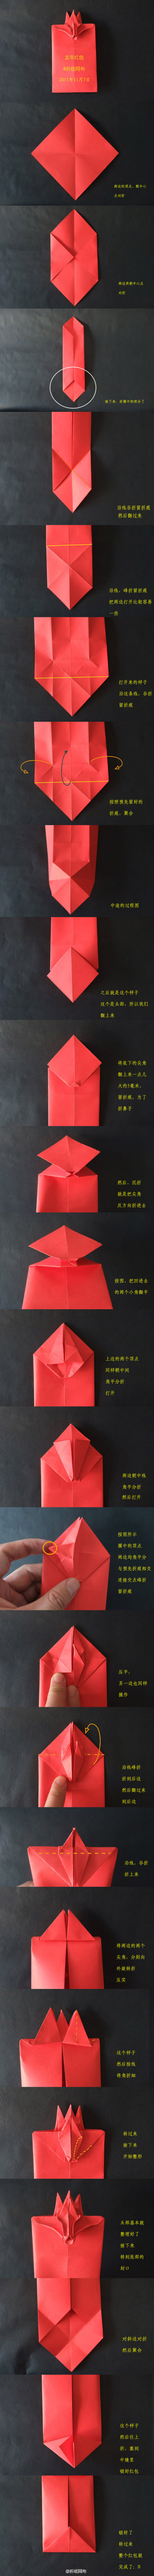 龙年红包折纸图解教程—折纸阿布